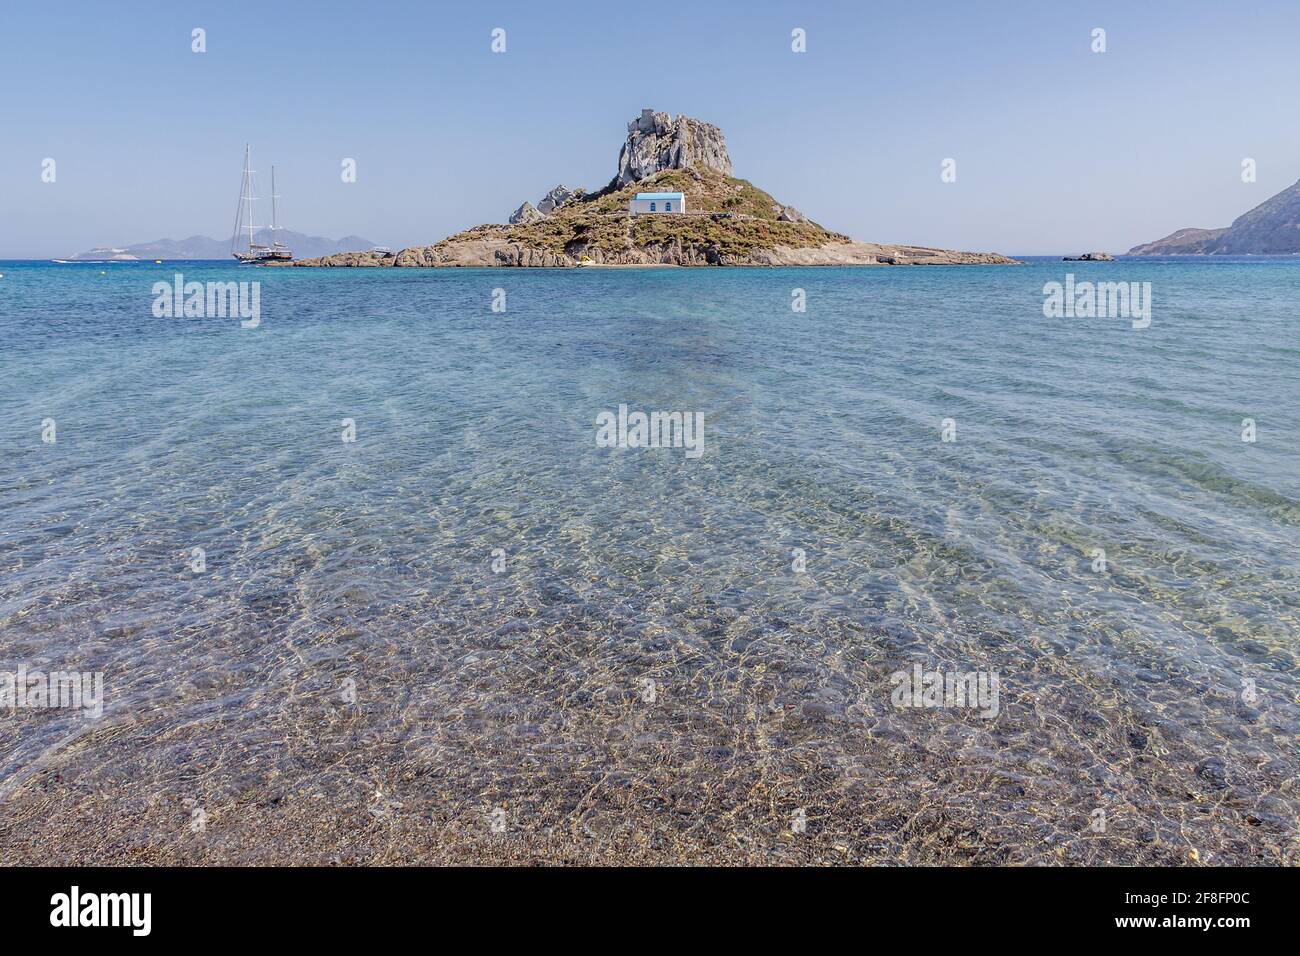 Der Strand ok Agios Stefanos auf der Insel Kos, beherbergt einige der schönsten Strände und zahlreiche griechische und römische Ruinen. Eine der dodekanischen Inseln, Griechenland, südliche Ägäis. Stockfoto